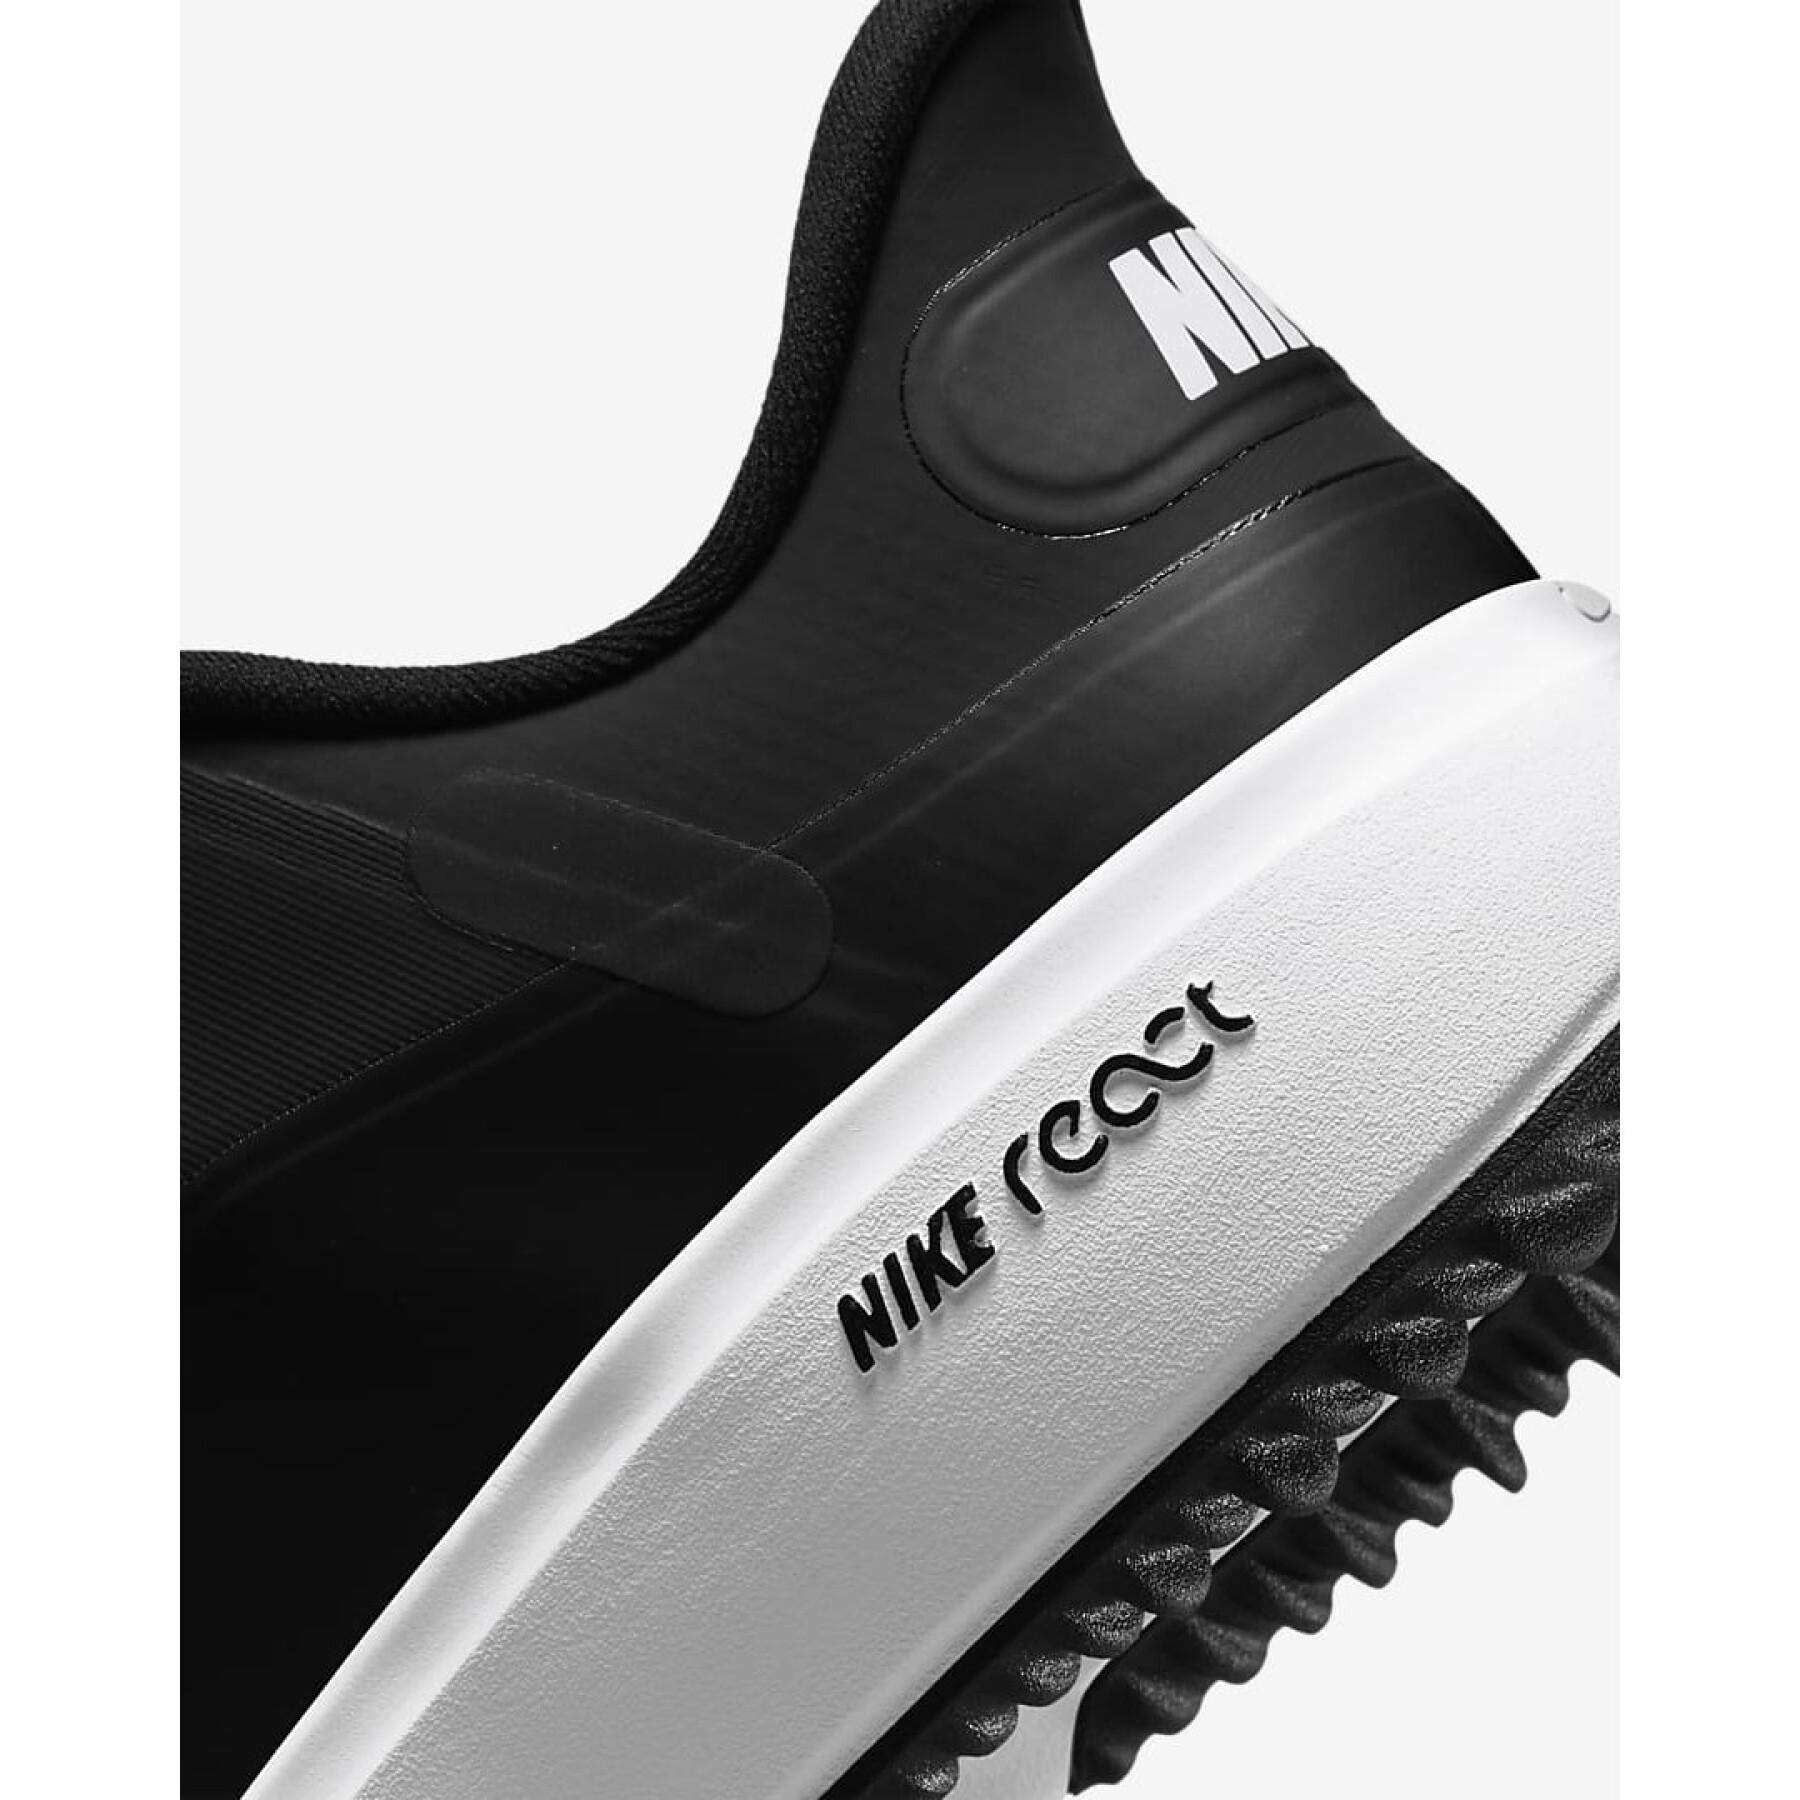 Women's golf shoes Nike React Ace Tour